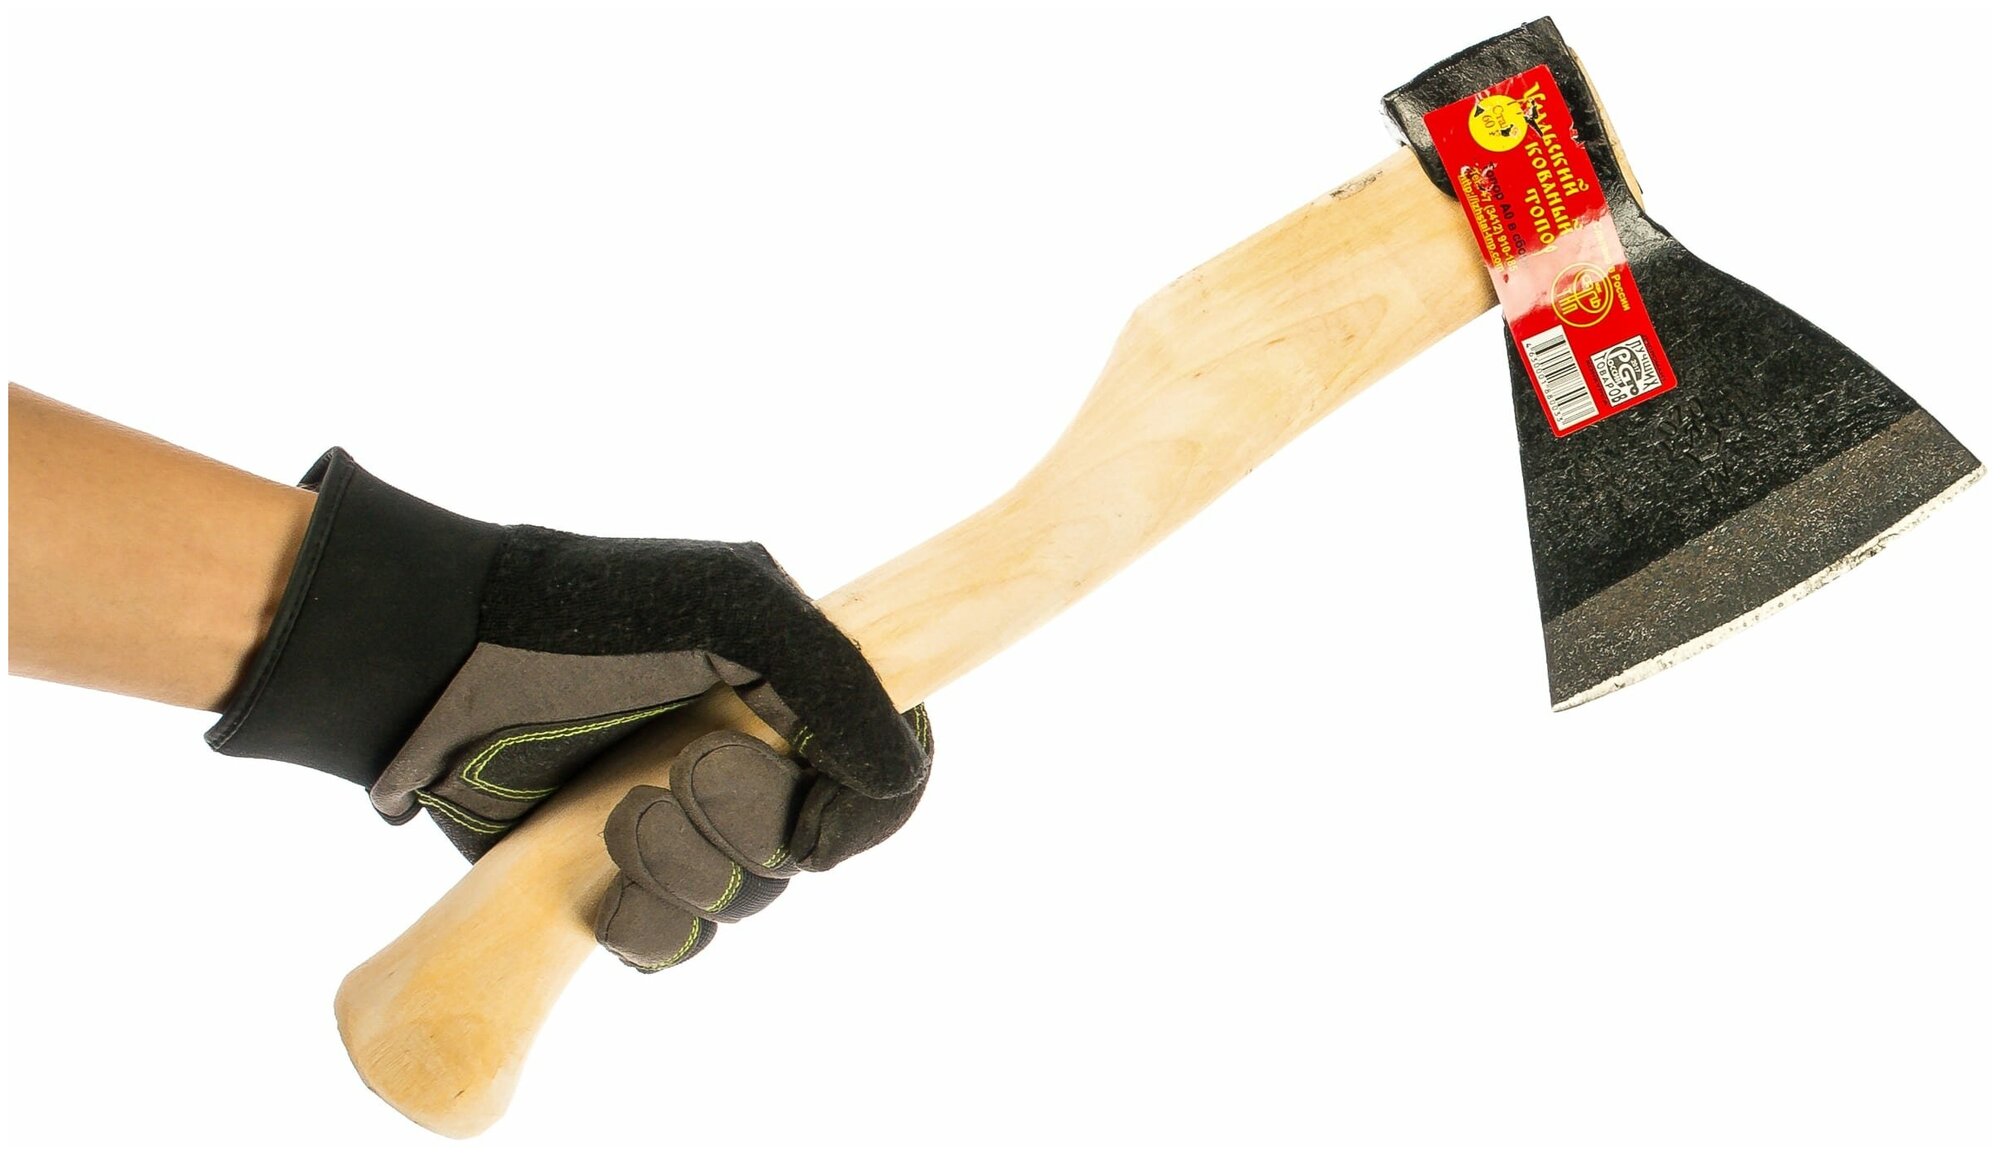 Ижсталь-ТНП А0 870 г топор кованый, деревянная рукоятка - фотография № 18